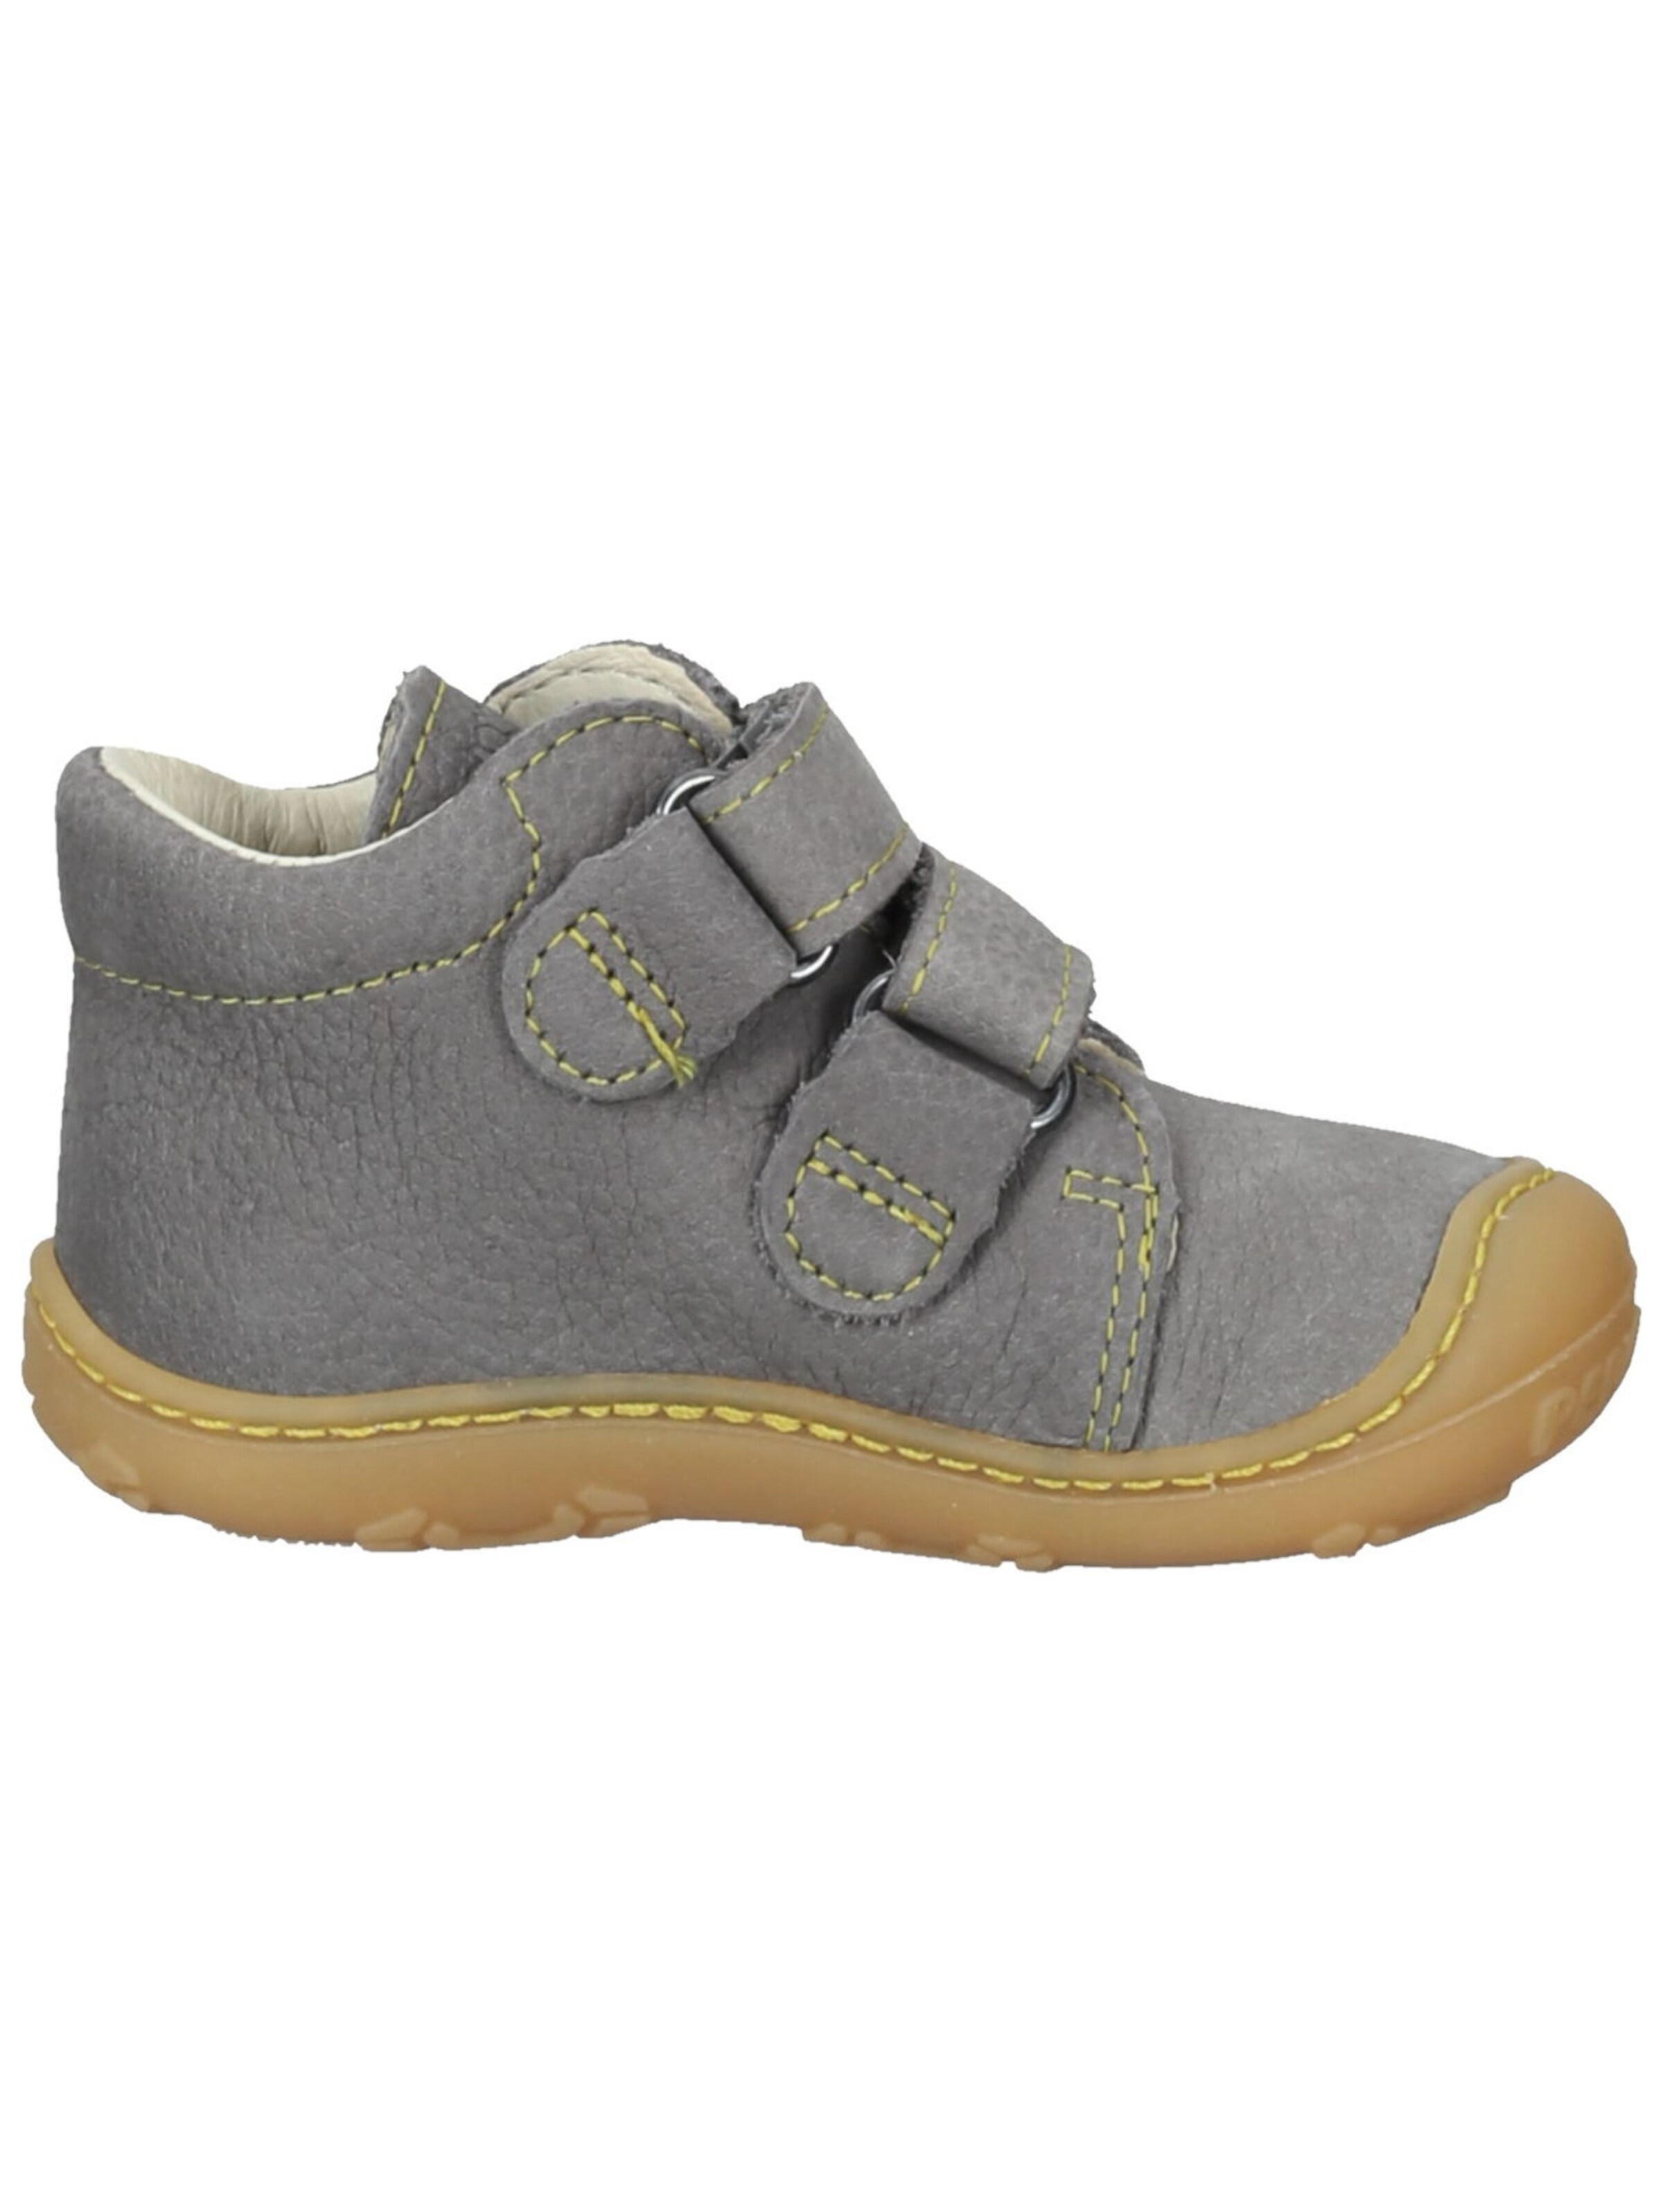 Kinder Schuhe Pepino Lauflernschuh in Graphit - RP27452